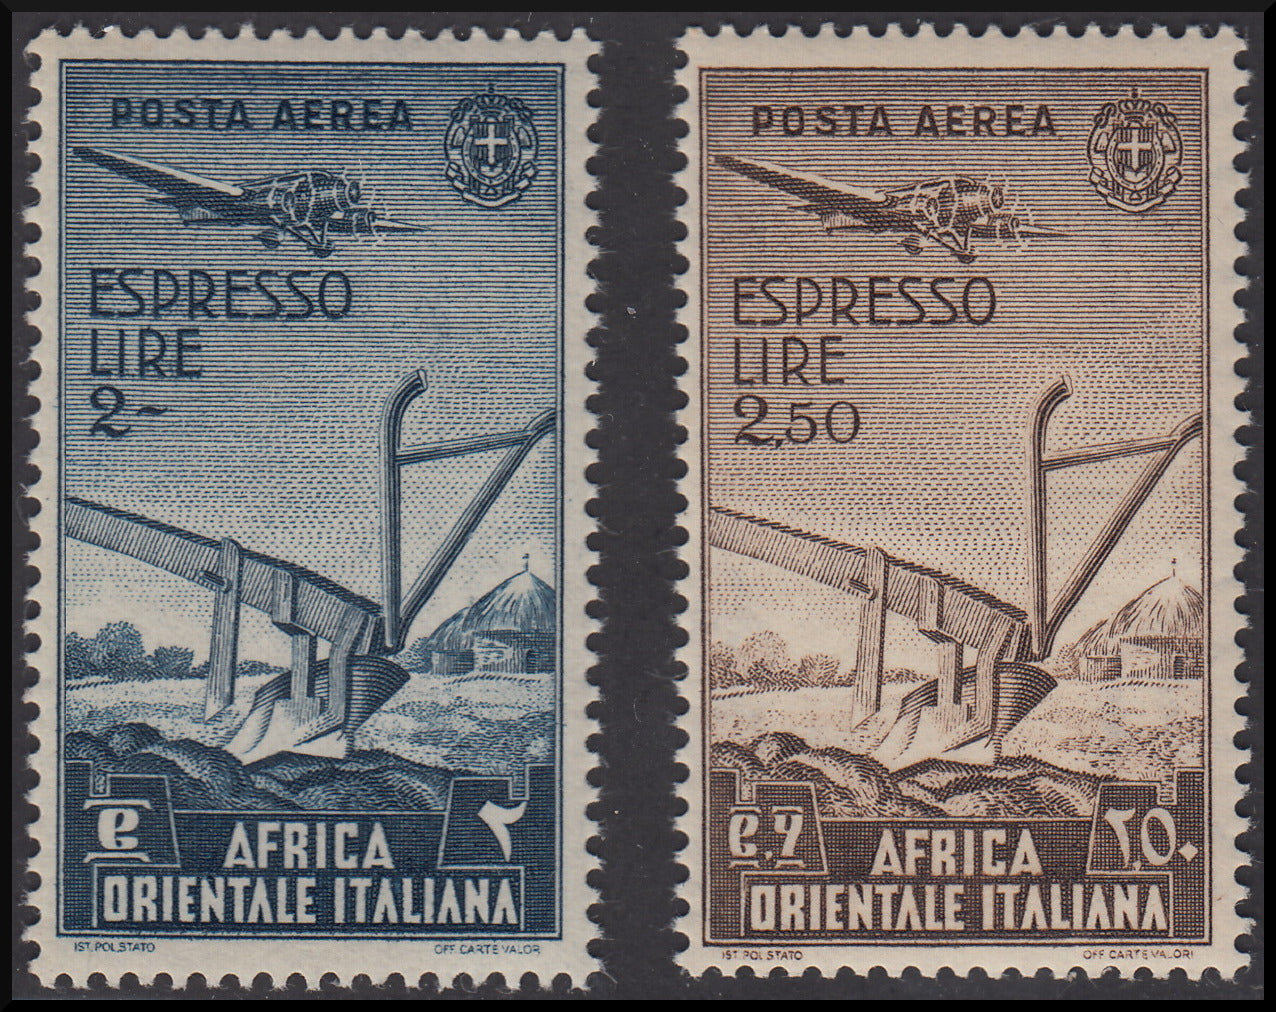 Colonie Italiane, Africa Orientale Italiana soggetti vari, serie di 20 valori di P.O. + 13 P.A. + 2 espressi (1/20 + A1/13 + E1/2) nuova inetgra.